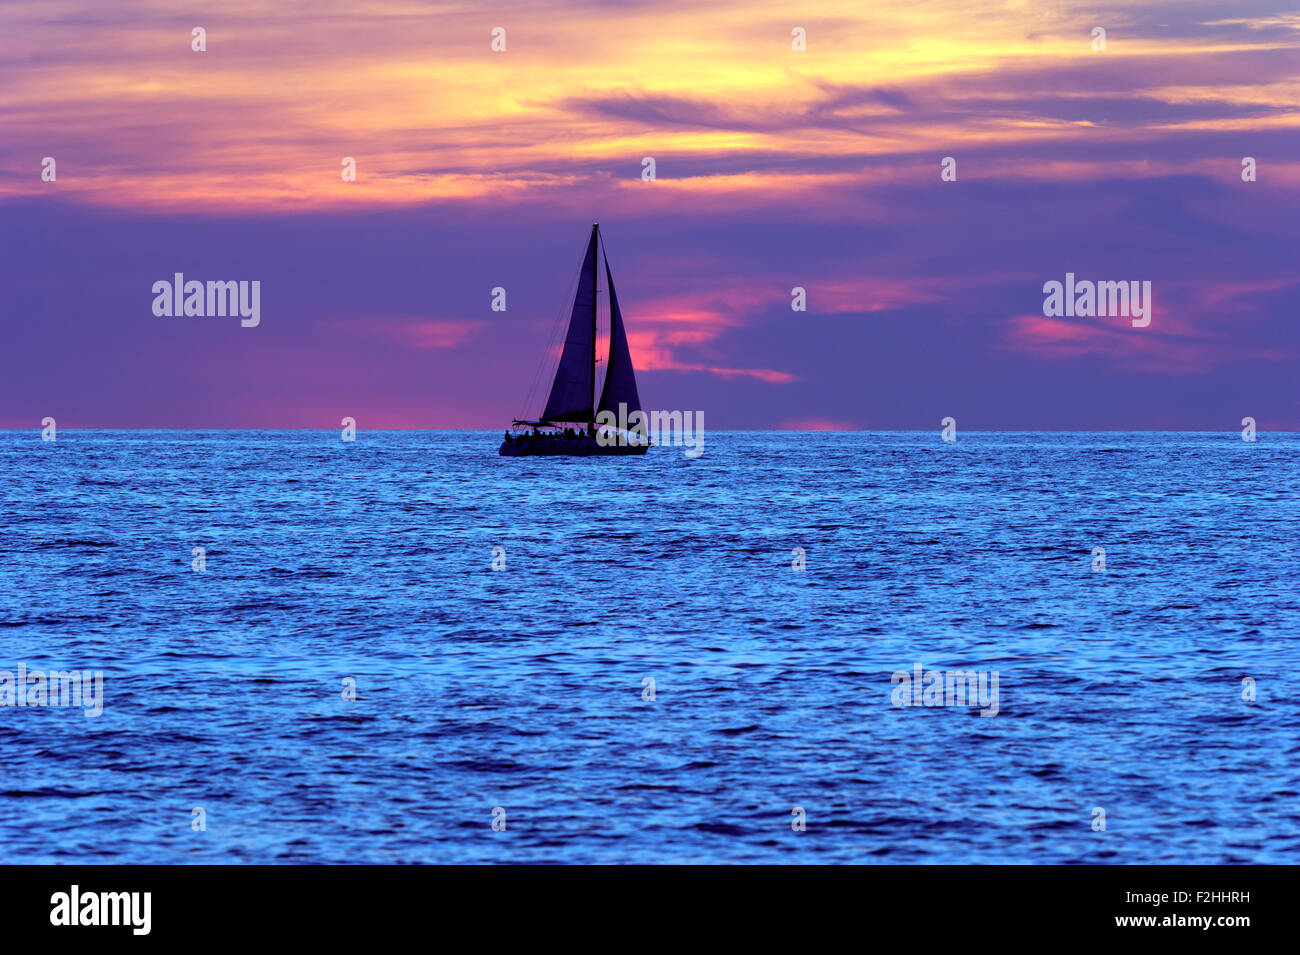 Voilier coucher du soleil est un bateau qui se profile et les personnes se déplaçant le long d'une mer bleue avec un ciel rempli de nuages colorés en arrière-plan. Banque D'Images